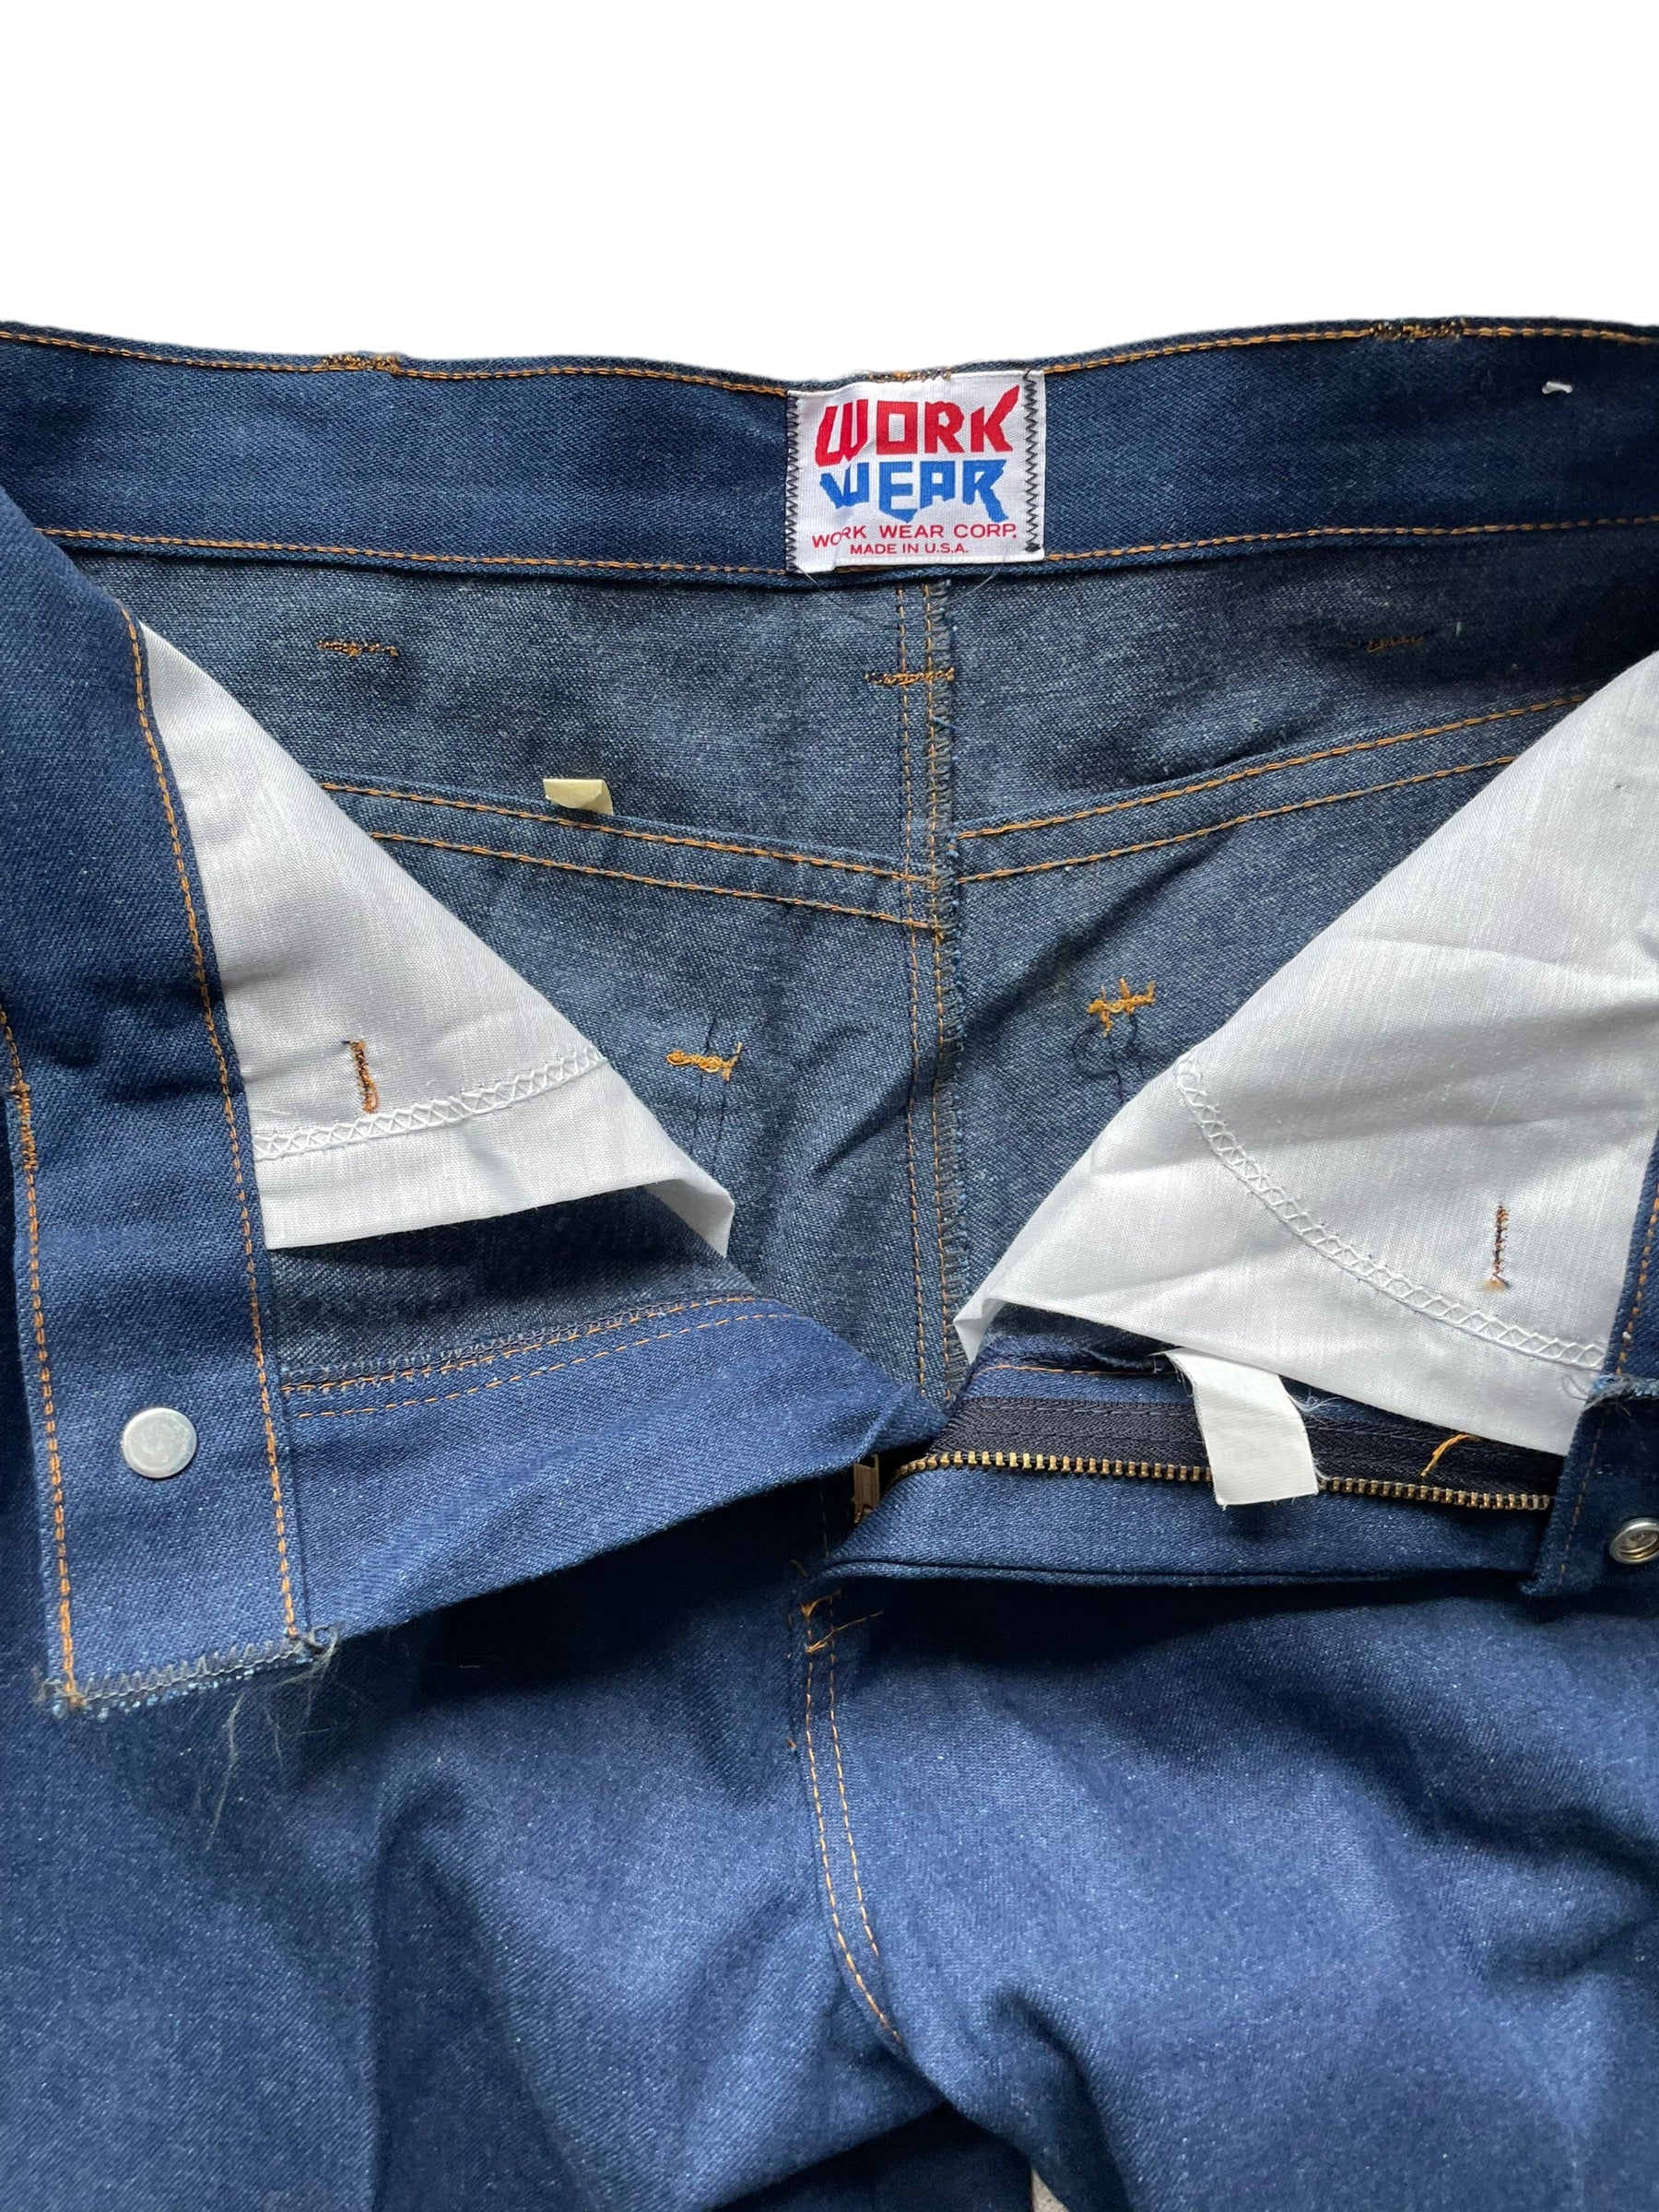 Open zipper view of Vintage Deadstock Work Wear Denim